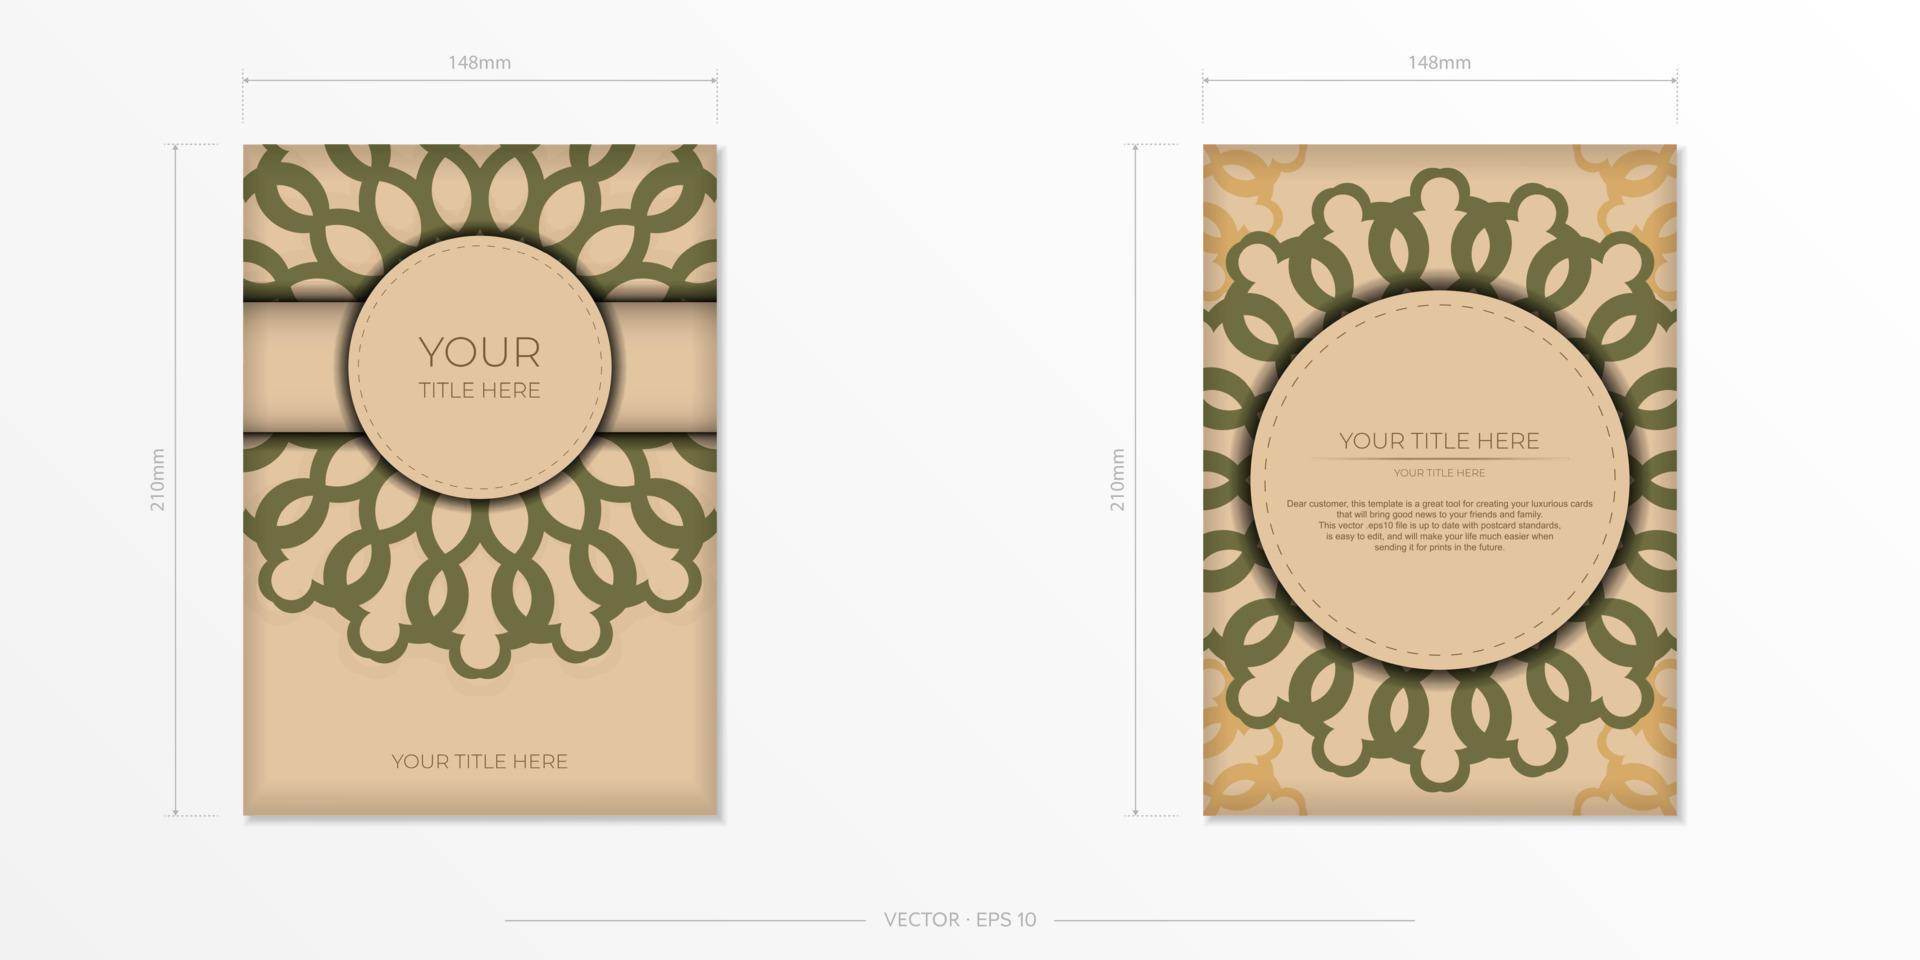 vector voorbereiding van uitnodiging kaart met plaats voor uw tekst en abstract ornament. klaar om te printen ontwerp van een ansichtkaart in beige kleur met mandala patronen.